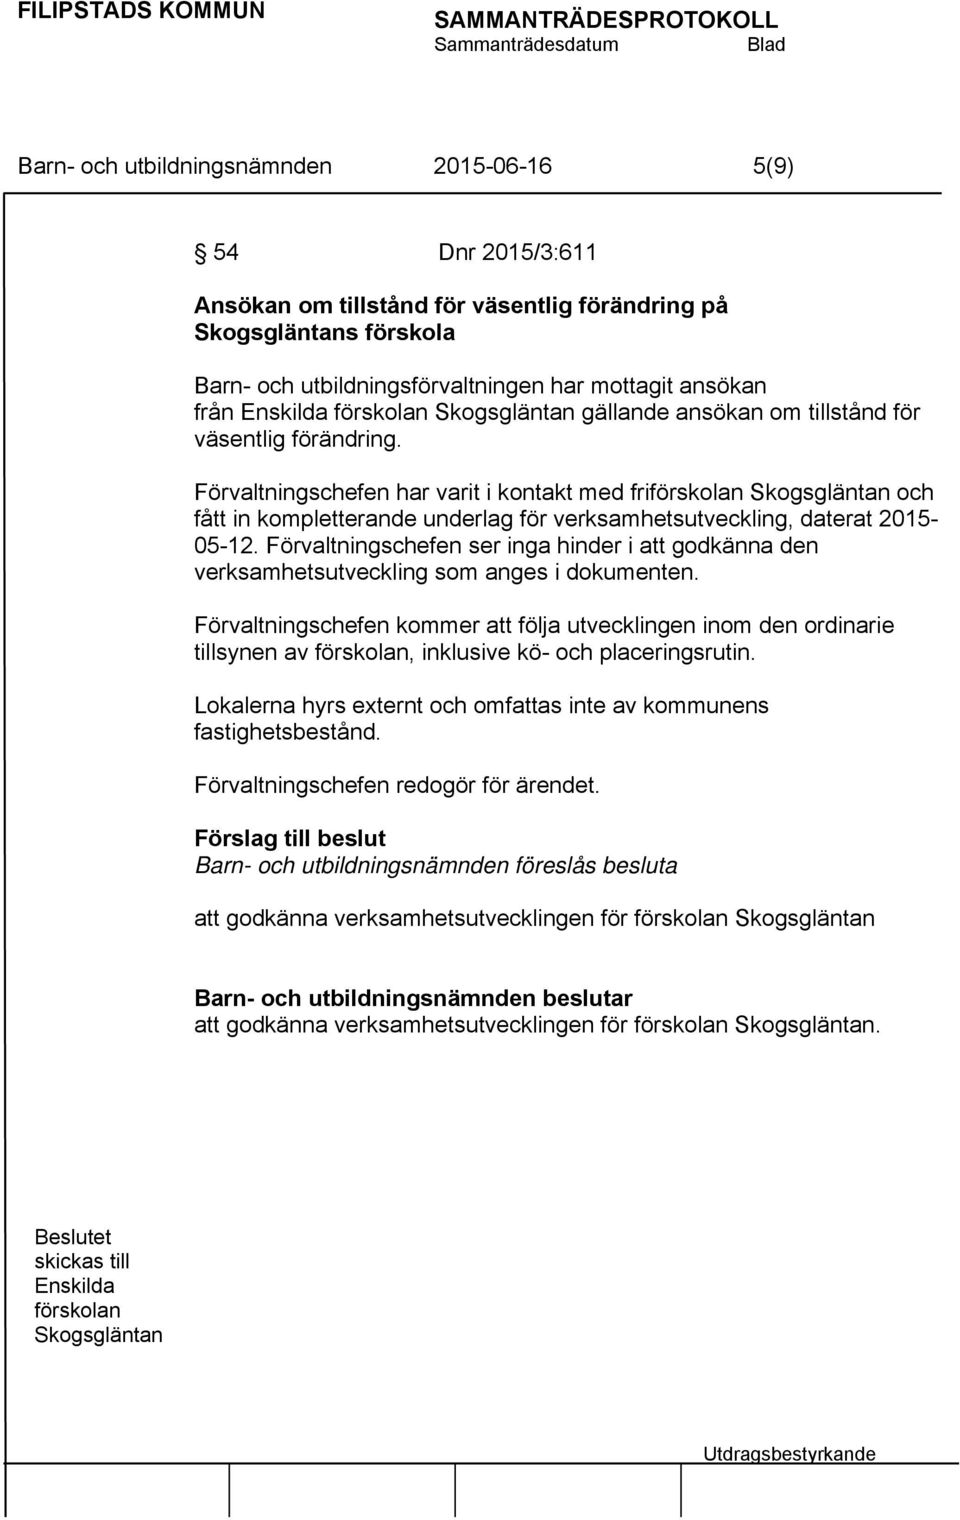 Förvaltningschefen har varit i kontakt med friförskolan Skogsgläntan och fått in kompletterande underlag för verksamhetsutveckling, daterat 2015-05-12.